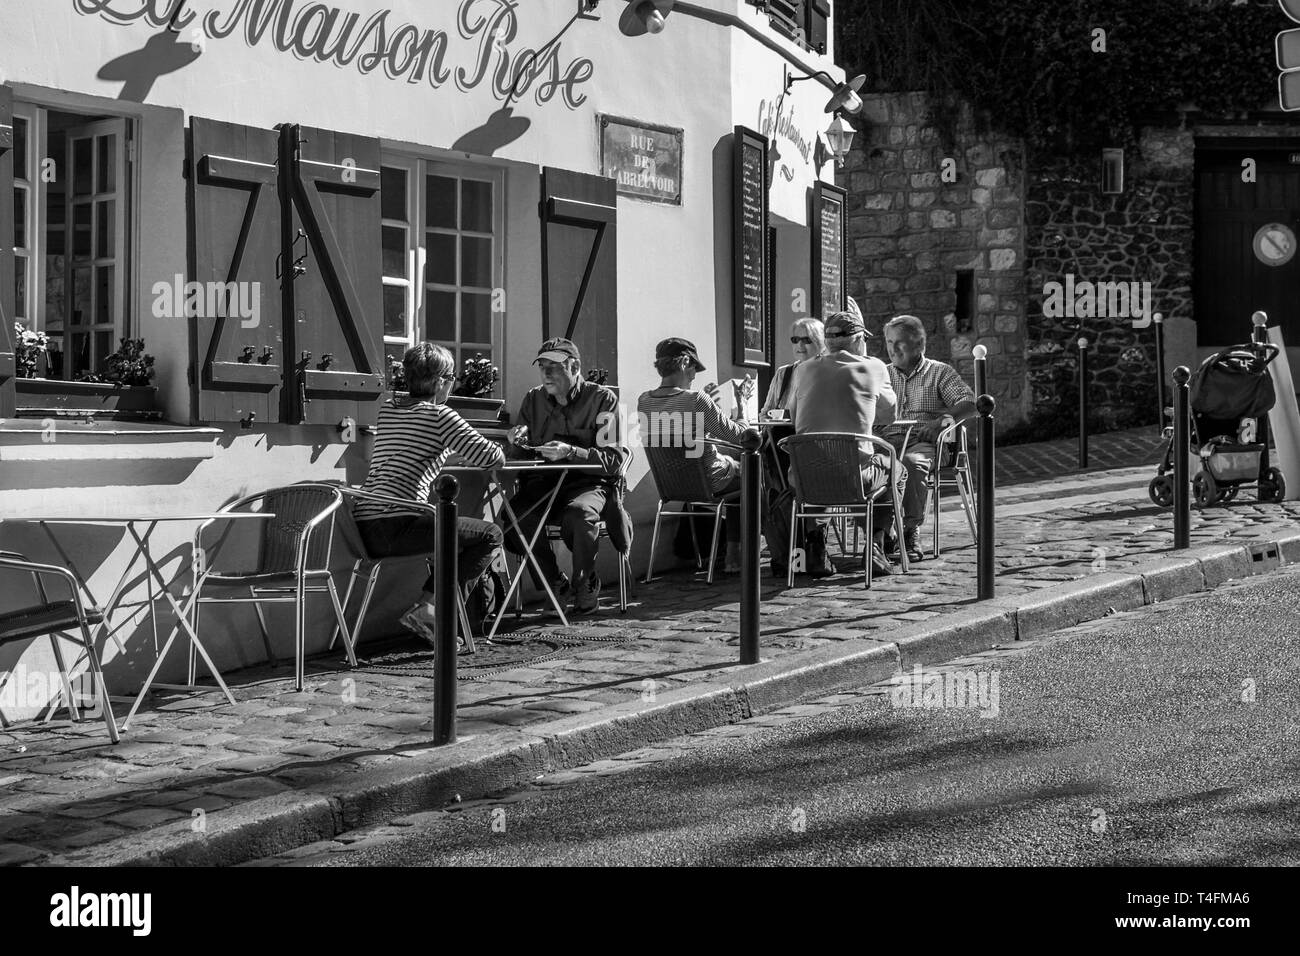 PARIS - Sept. 22: Pariser und Touristen genießen das Mittagessen in einem Straßencafé in Paris, Frankreich, September 22,2010. Paris ist eine der am dichtesten bevölkerten metr Stockfoto